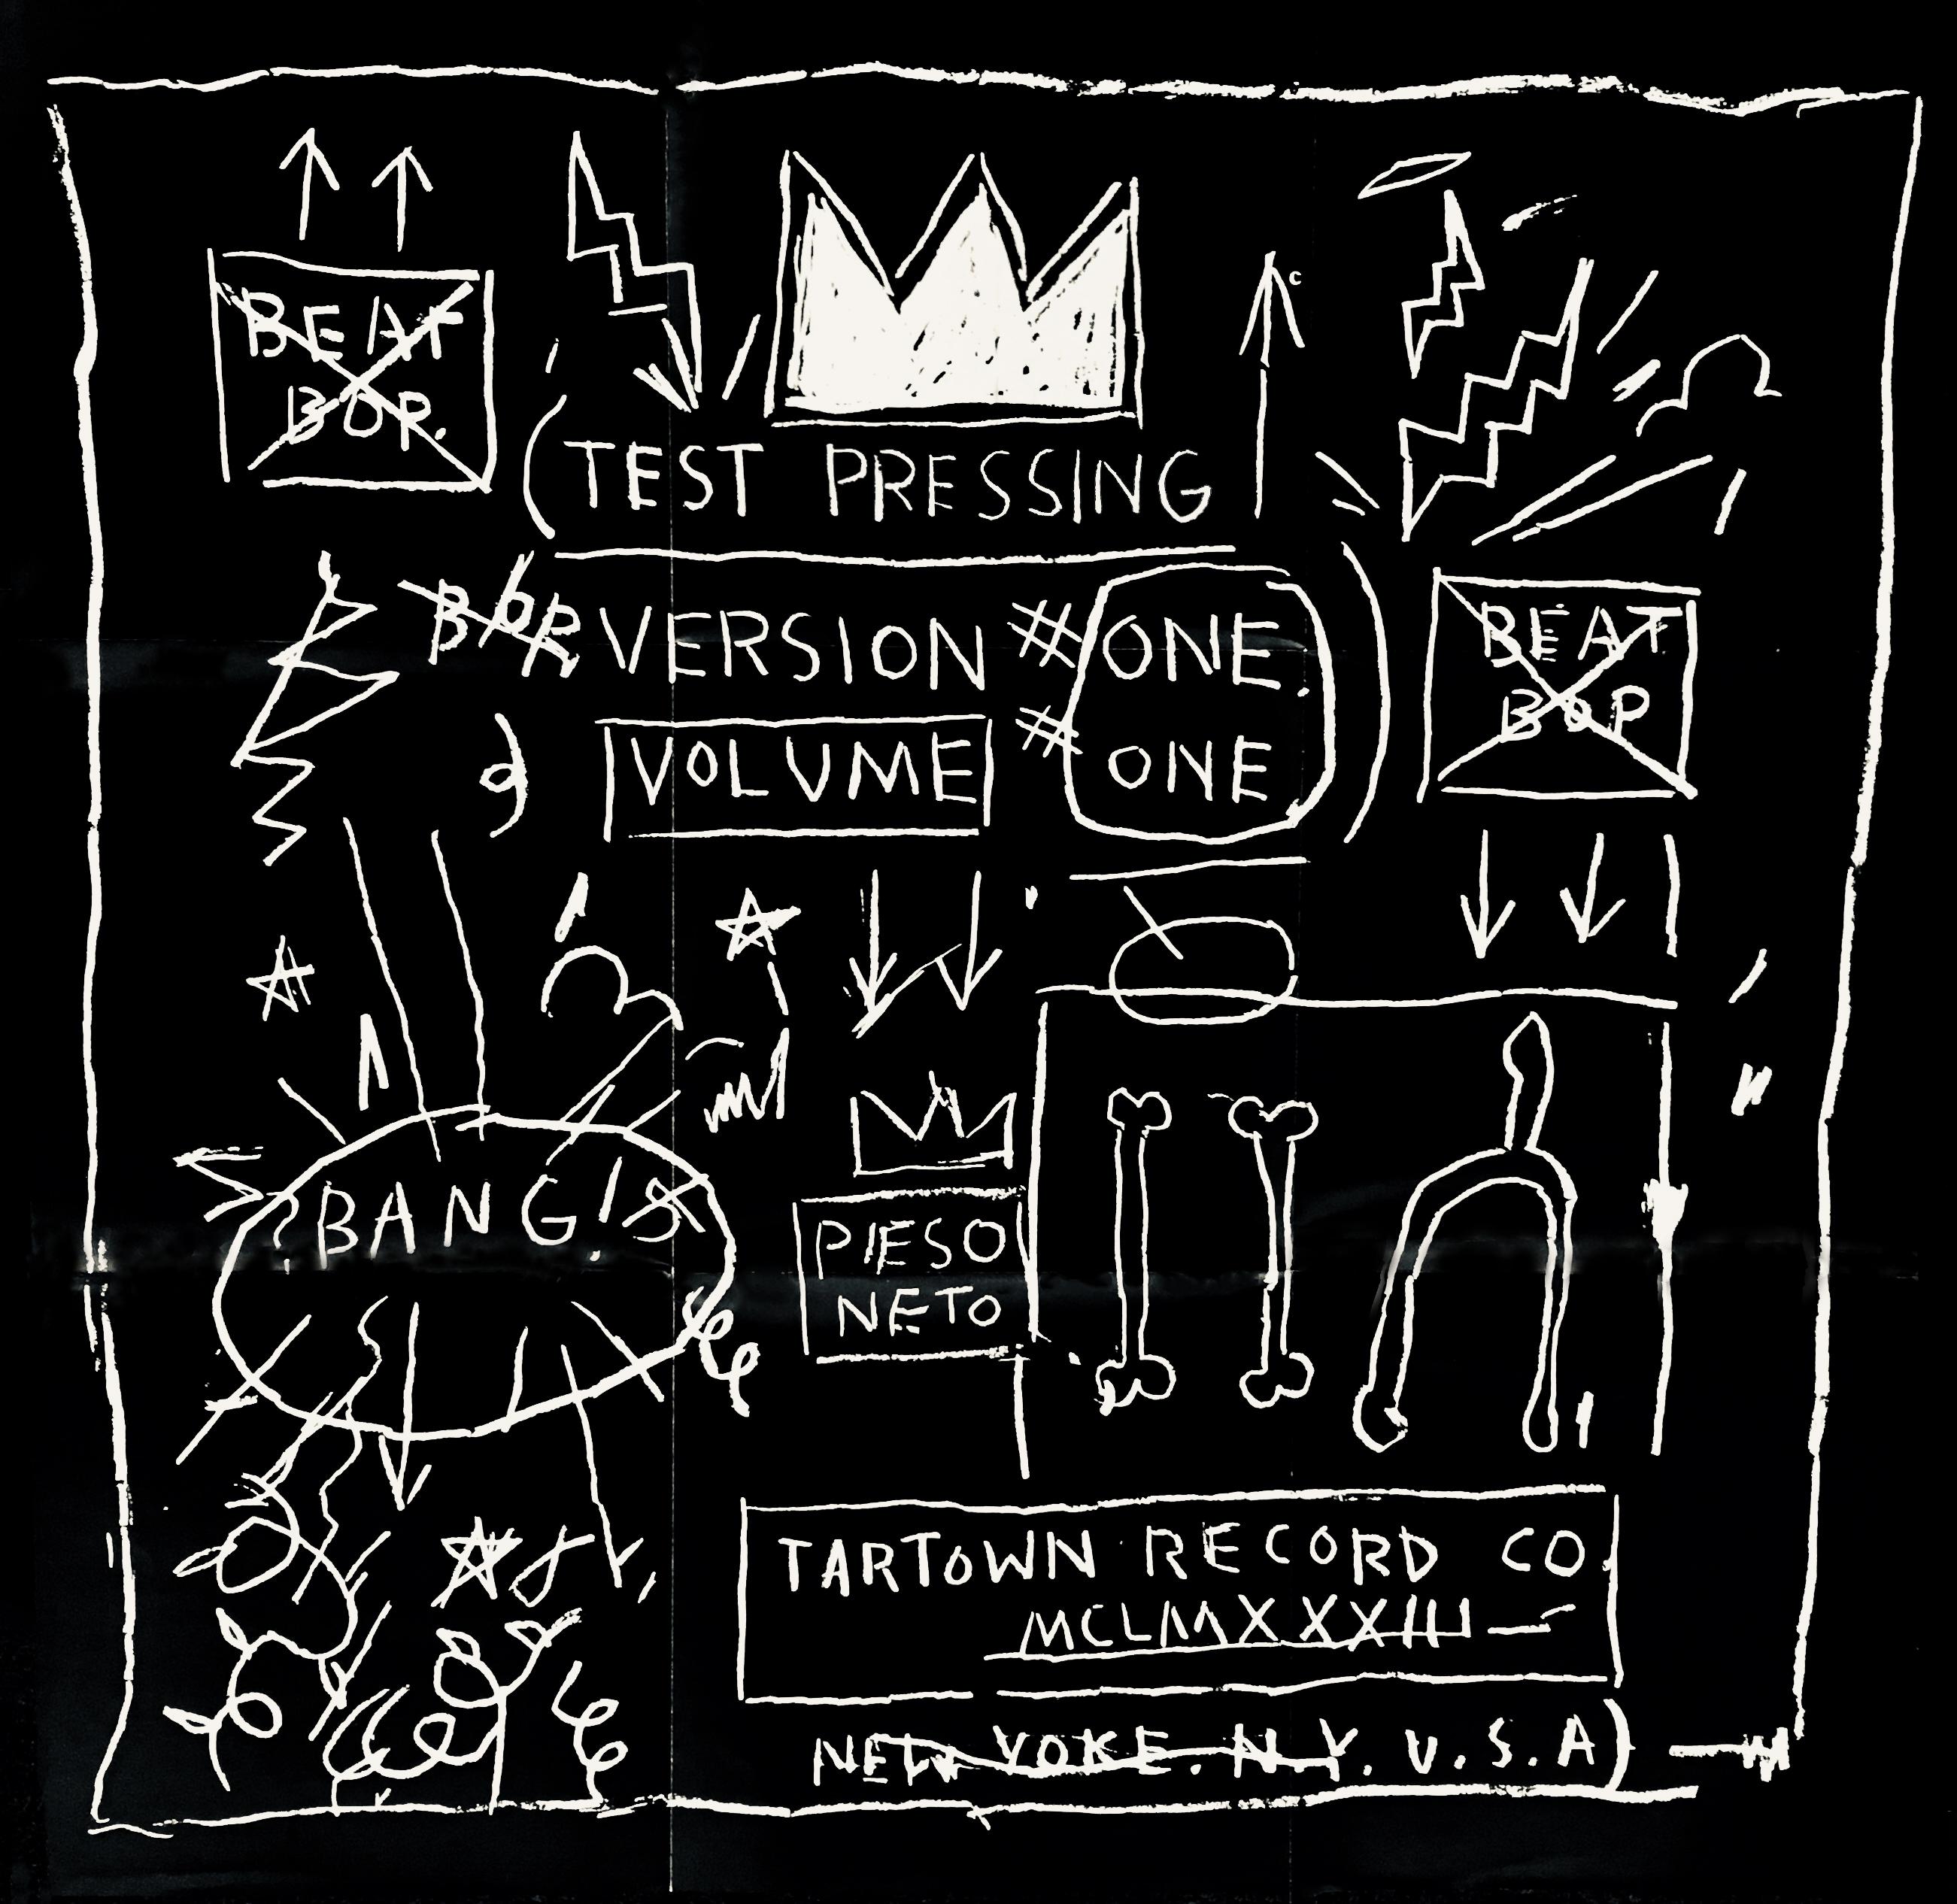 Basquiat Schallplattenkunst 1983/2005:
Diese Basquiat Beat Bop-Platte wurde ca. 2005 mit einem seltenen doppelseitigen Faltposter im Format 24 x 24 inch (61 x 61 cm) veröffentlicht, das in Anlehnung an das Album produziert wurde. Die einzelnen